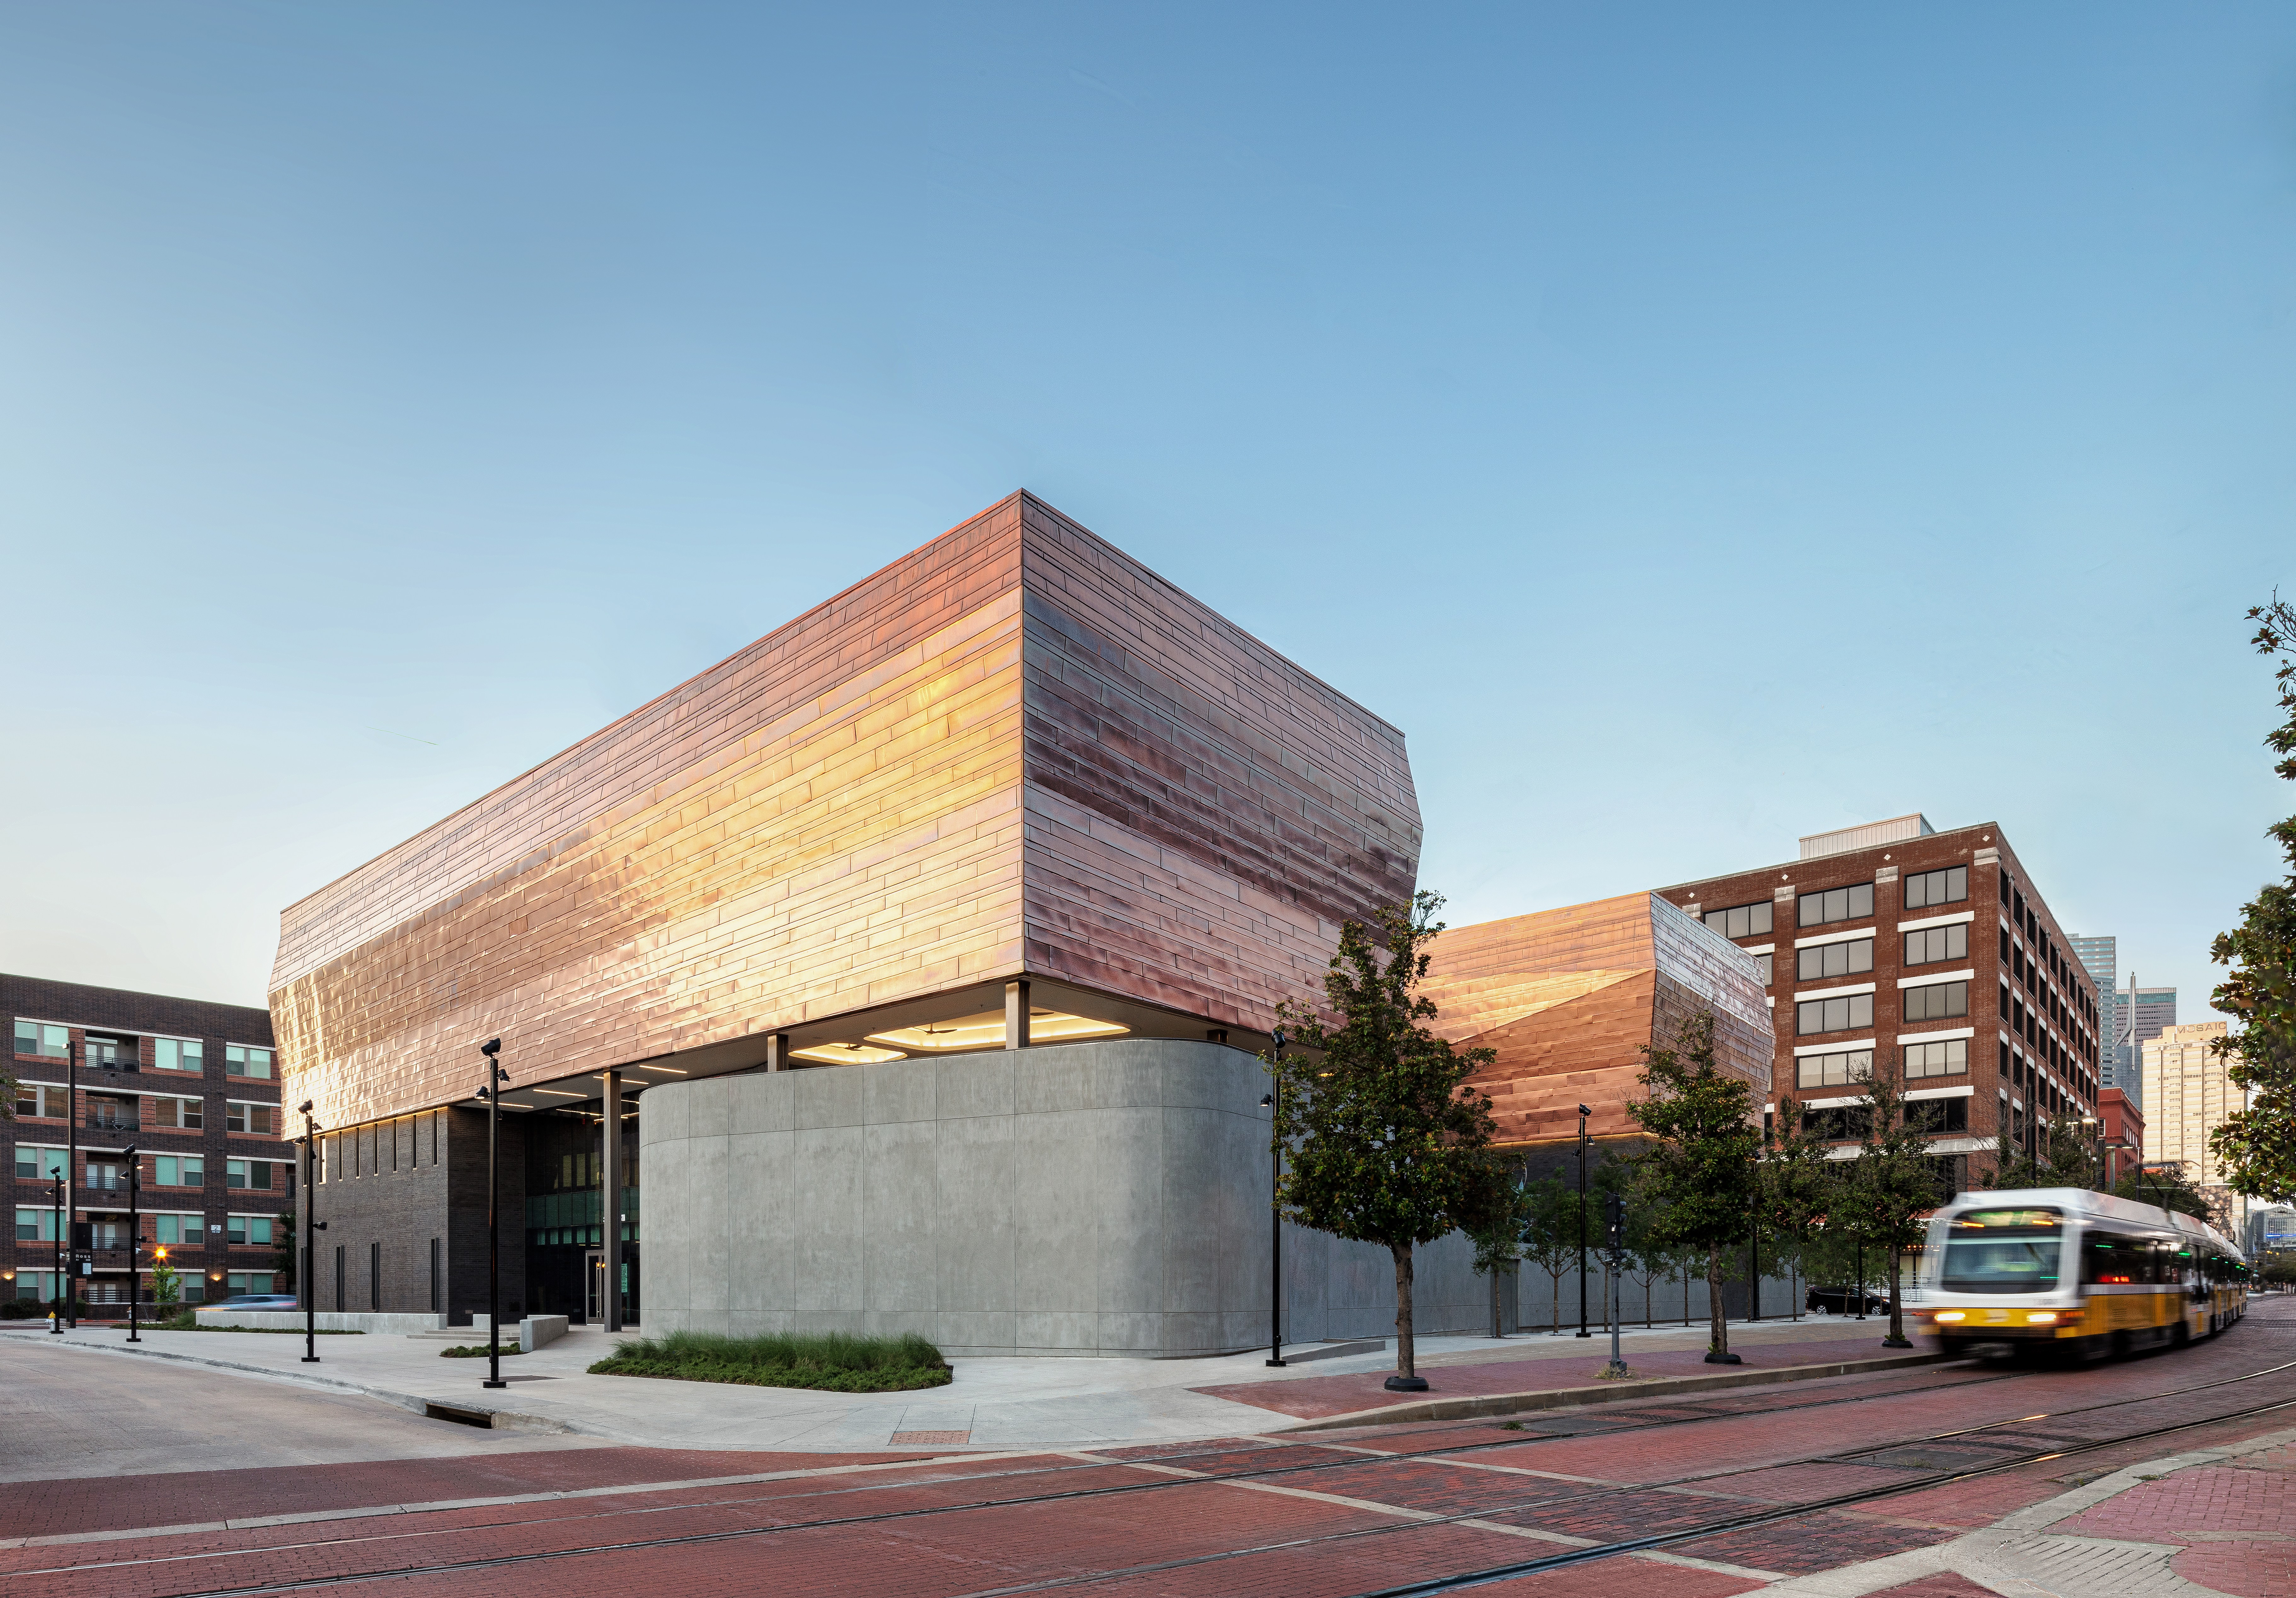 Museu do Holocausto e Direitos Humanos de Dallas reabre em novo local 